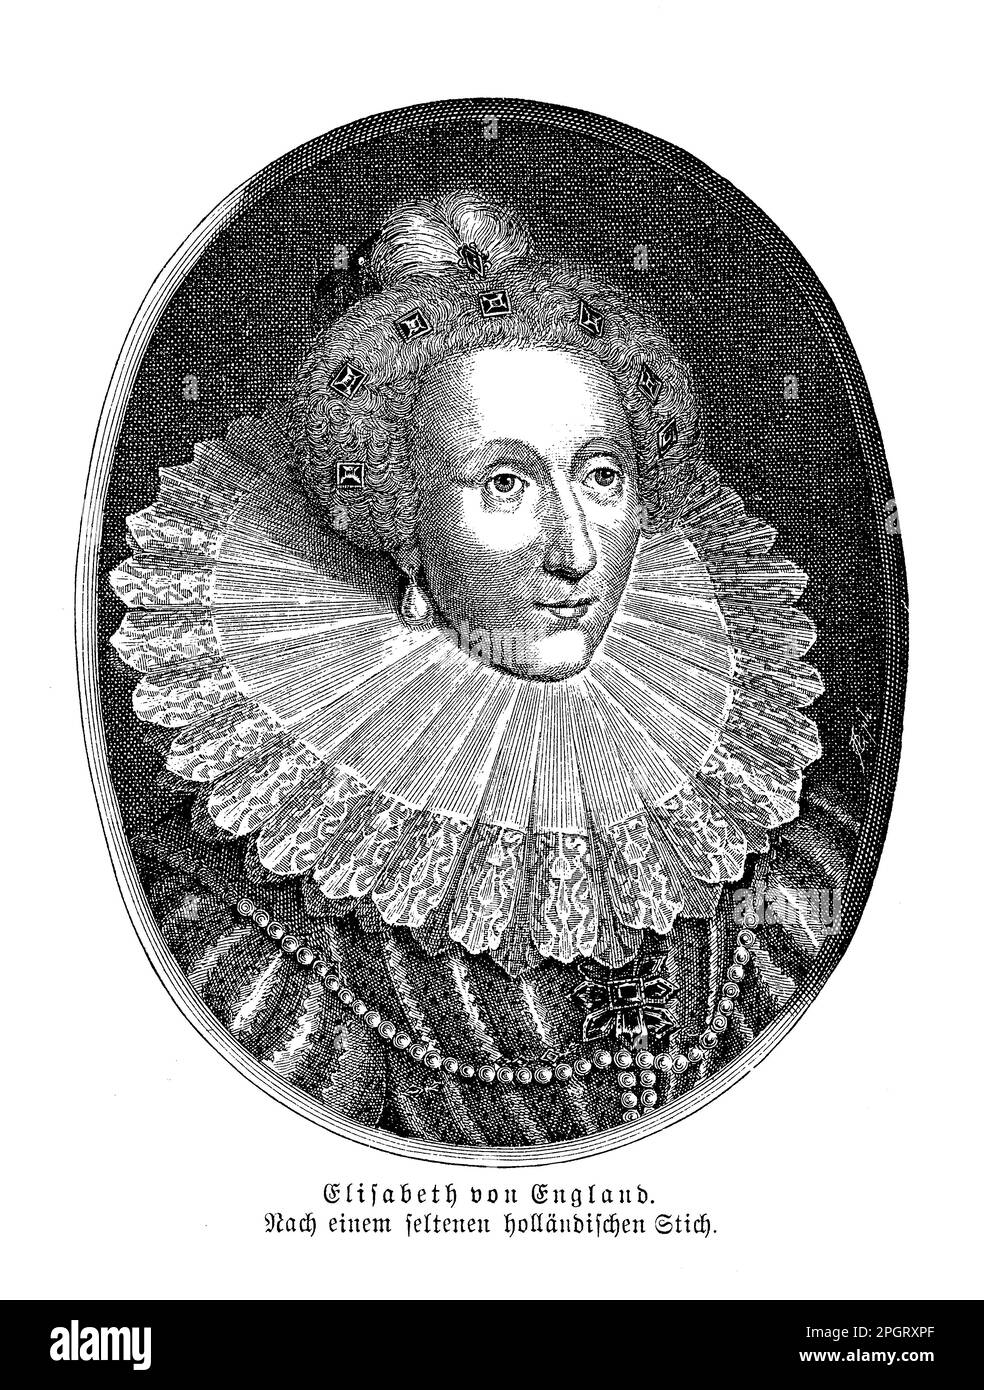 Elizabeth I. von England in einem seltenen niederländischen Porträt war eine der mächtigsten und erfolgreichsten Monarchen in der englischen Geschichte. Sie herrschte ab 1558-1603 und beaufsichtigte die Blüte der englischen Renaissance-Kultur, die Niederlage der spanischen Armada und die Errichtung der anglikanischen Kirche. Stockfoto